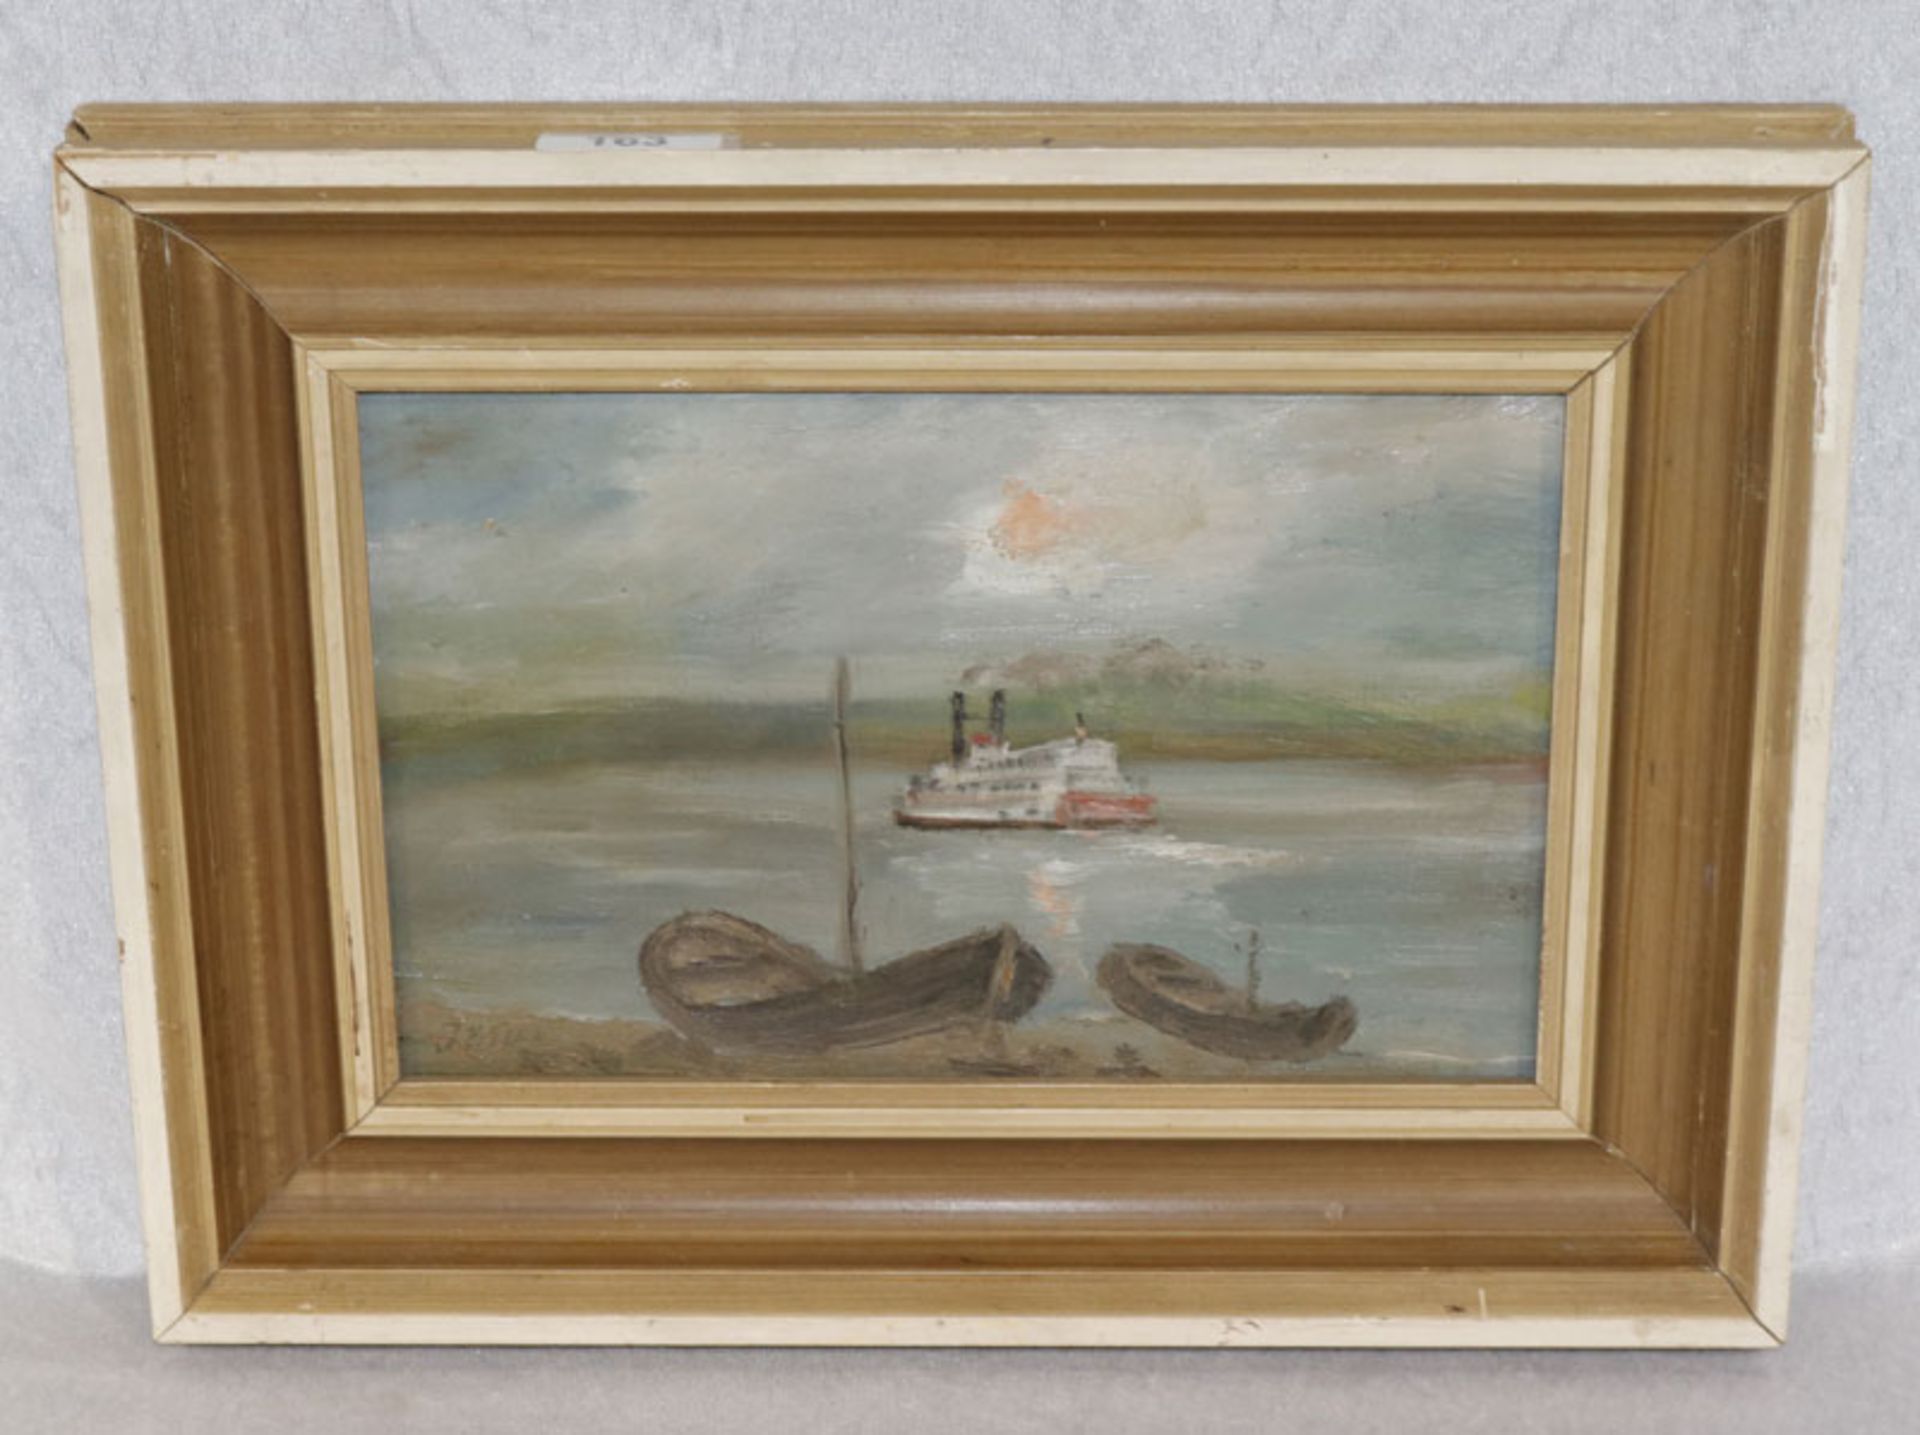 Gemälde ÖL/Hartfaser 'Seelandschaft mit Booten', signiert J. Bilek ?, gerahmt, Rahmen beschädigt,